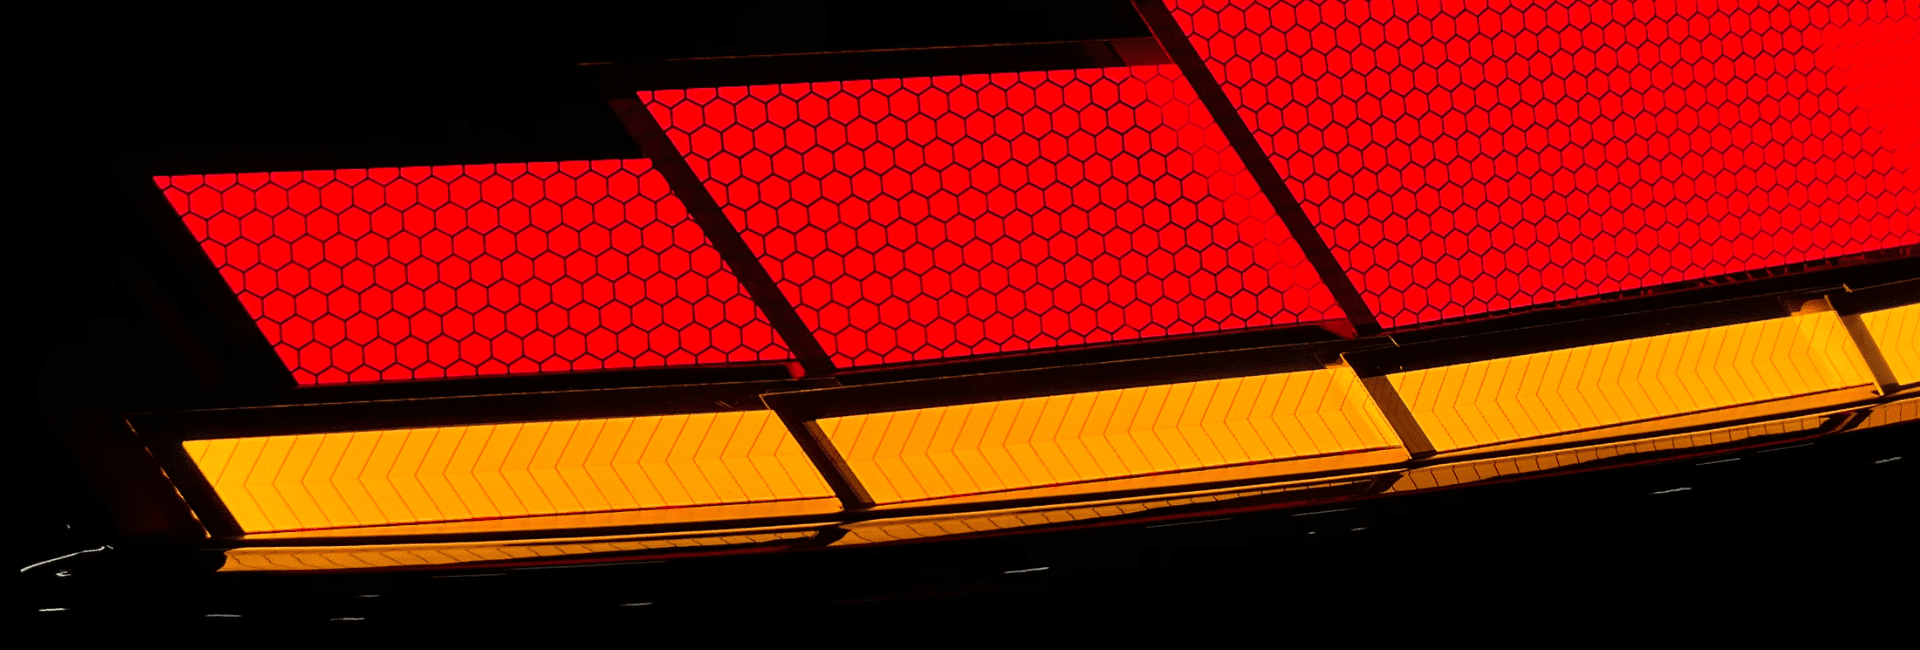 Segmented Automotive OLED Lighting Panels | OLEDWorks